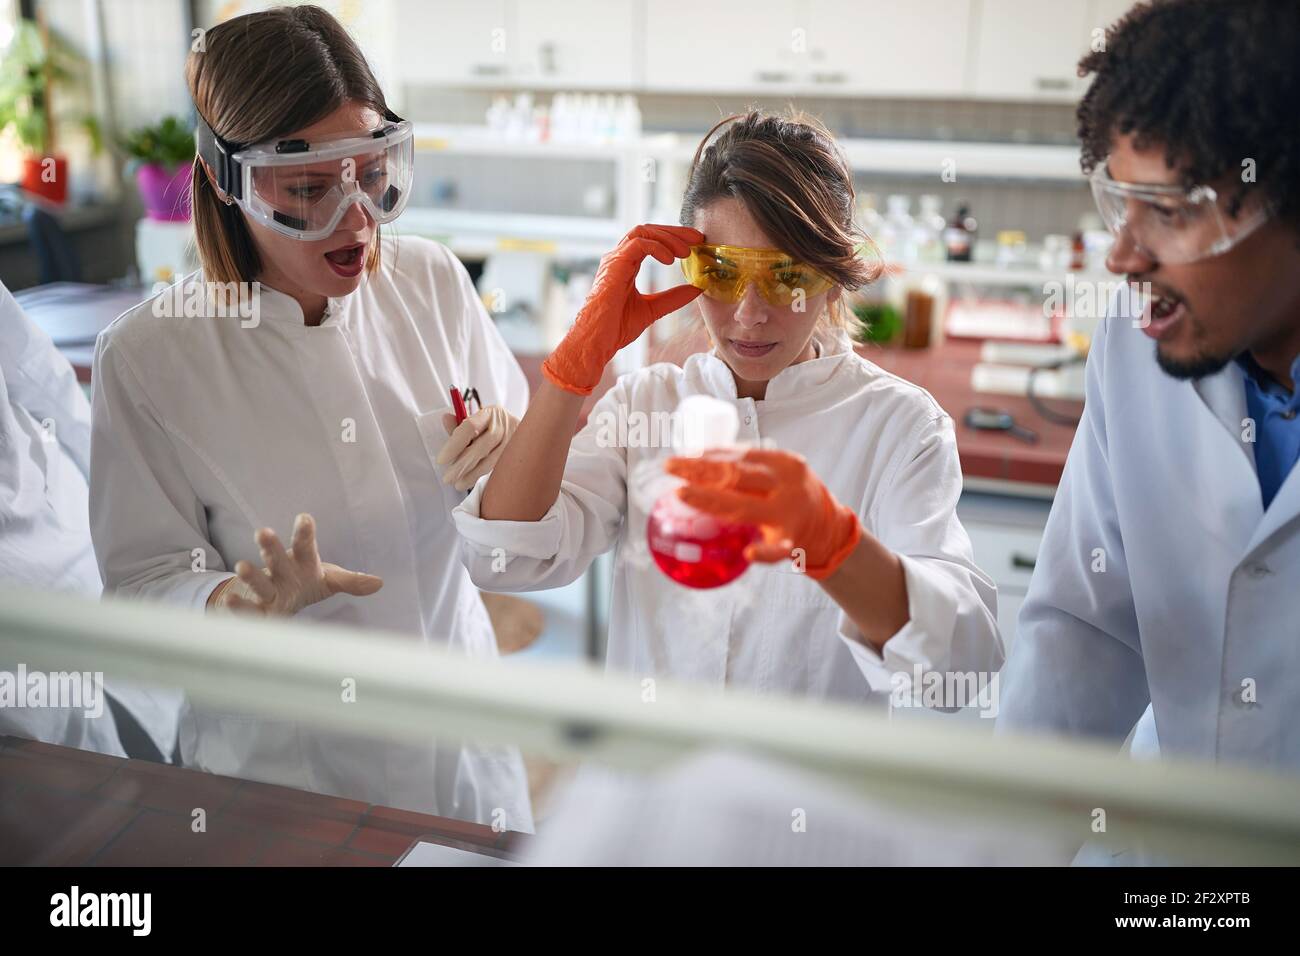 Jóvenes estudiantes de química excitada están observando una reacción química en un experimento que hacen en un laboratorio en una atmósfera de trabajo. Ciencia, química Foto de stock